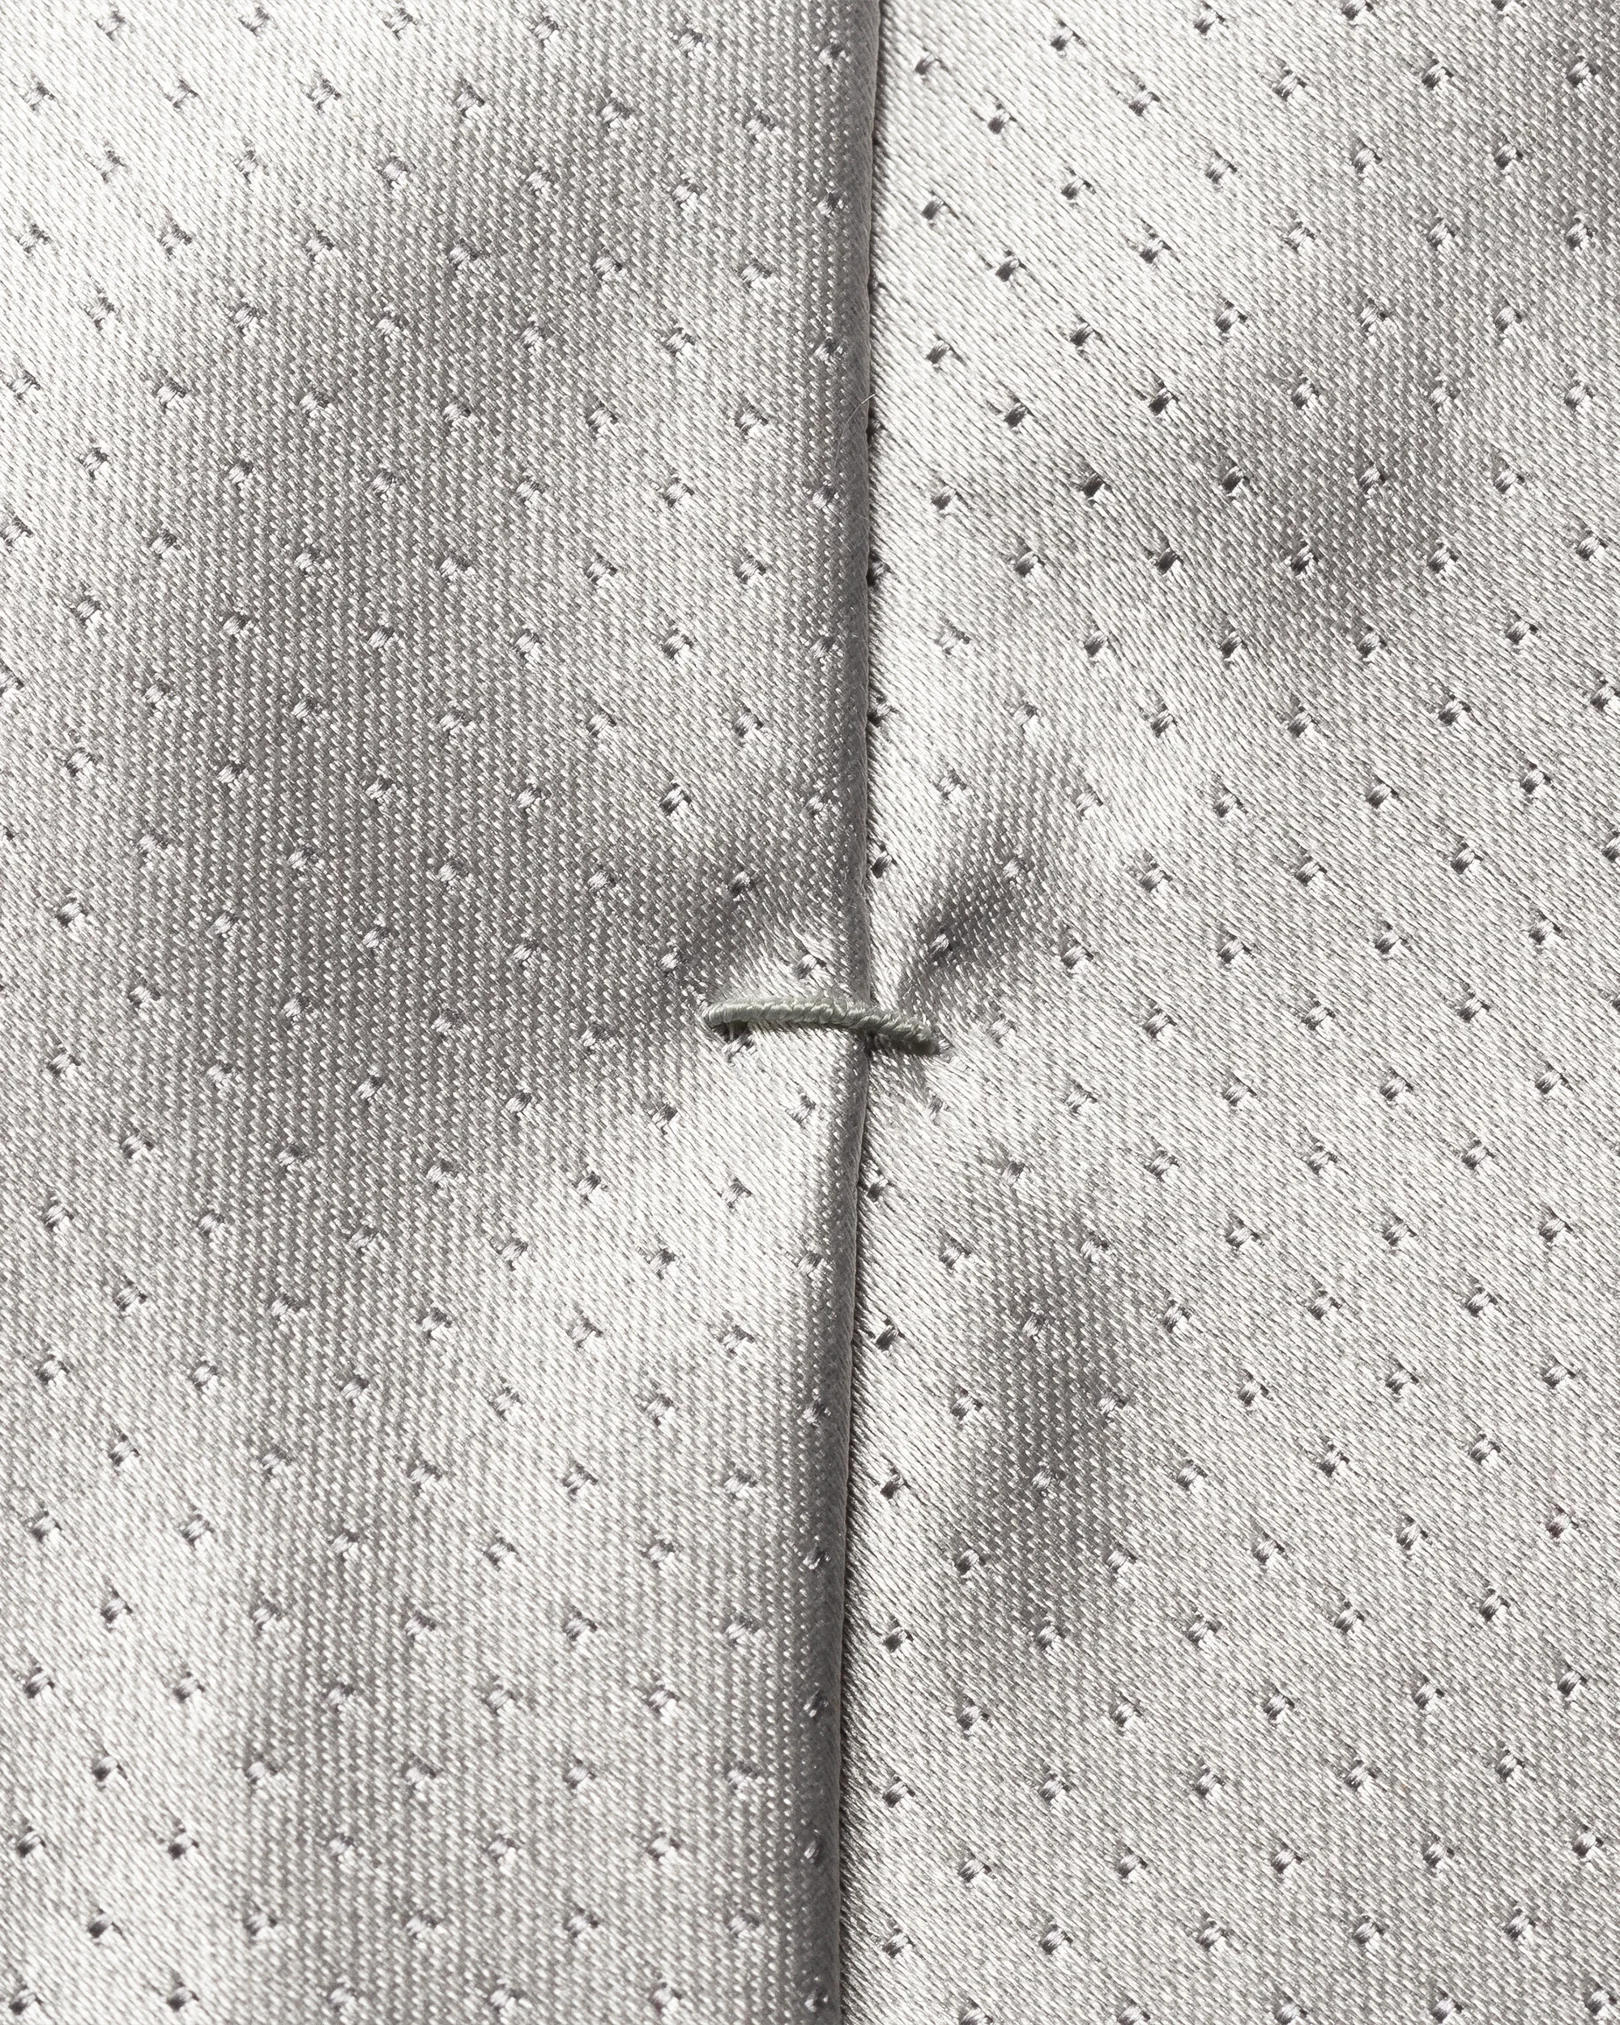 Eton - light grey pin dot tie